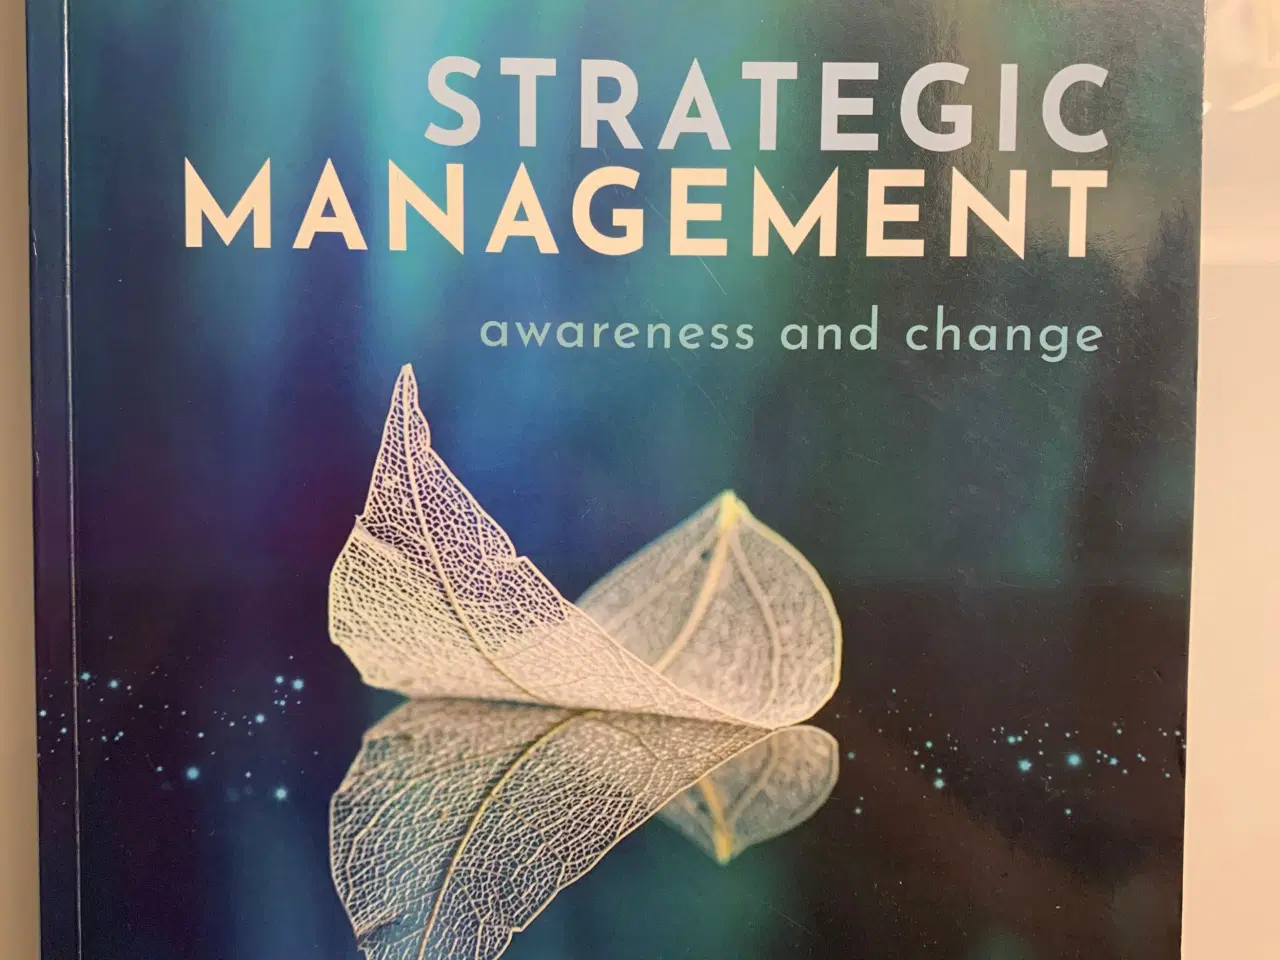 Billede 1 - Strategic Management, awareness and change